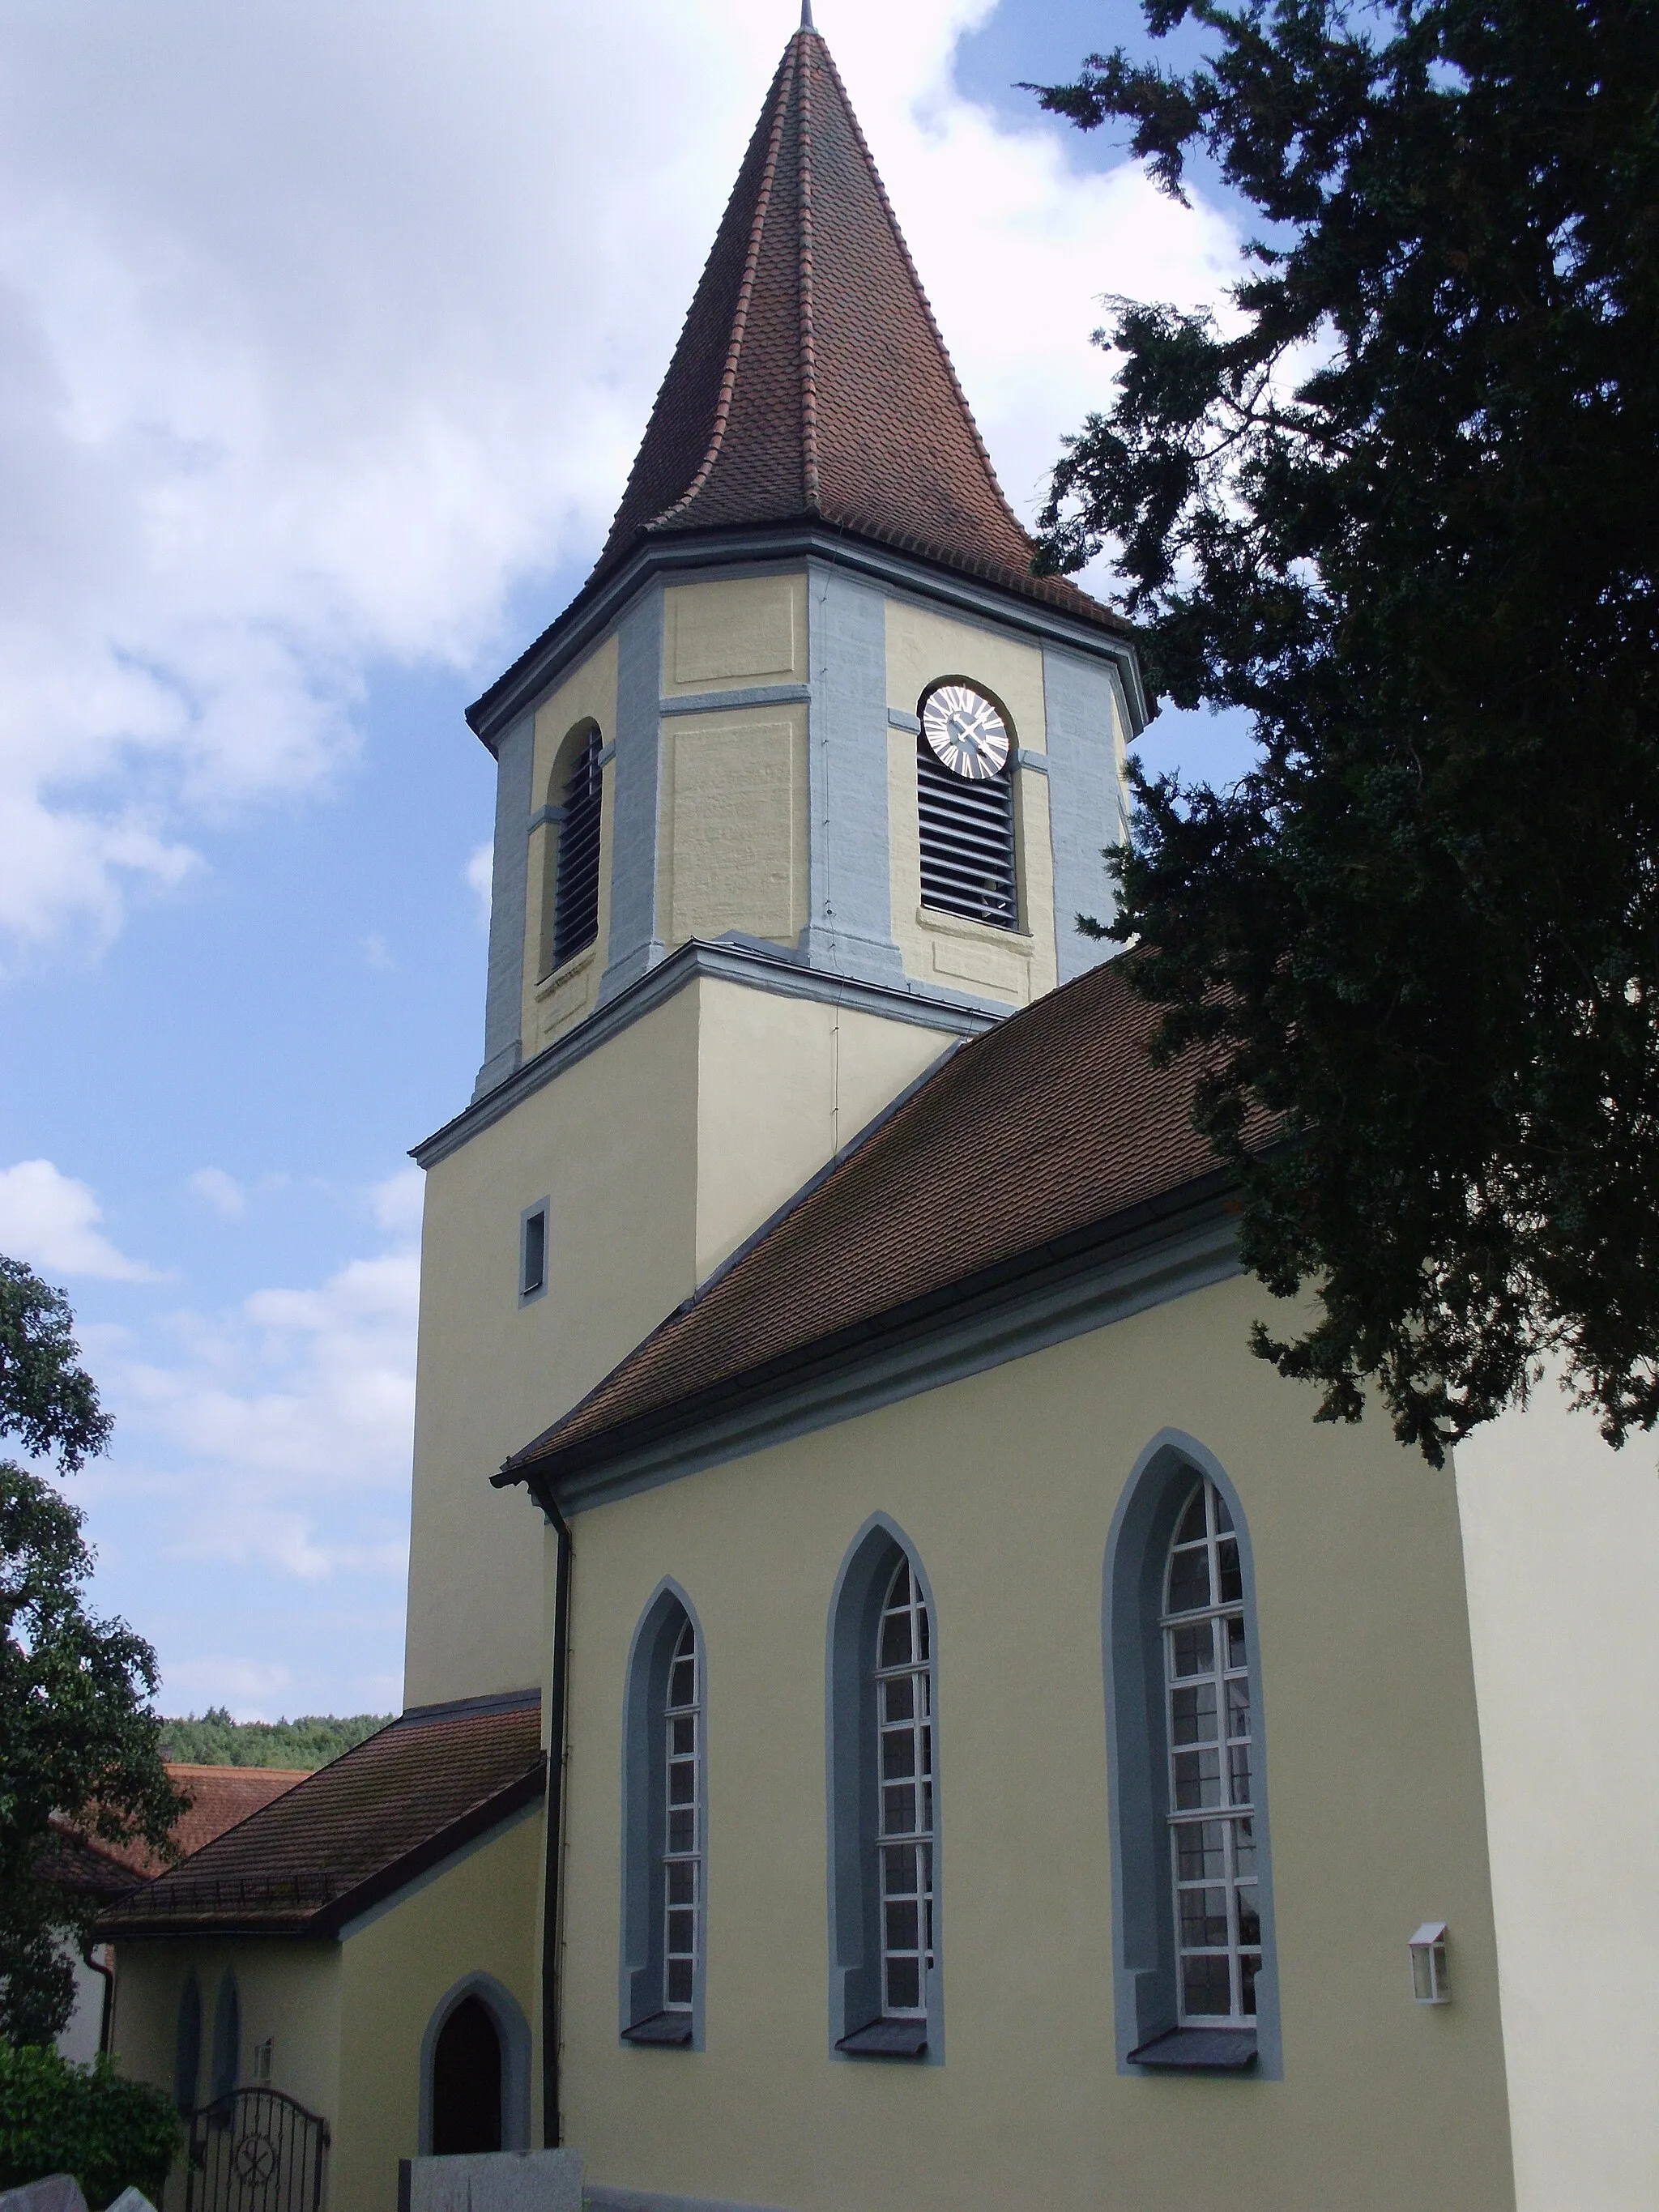 Photo showing: Schwimbach. Ortsteil von Thalmässing im mittelfränkischen Landkreis Roth, Evangelisch-lutherische Pfarrkirche St. Lorenz